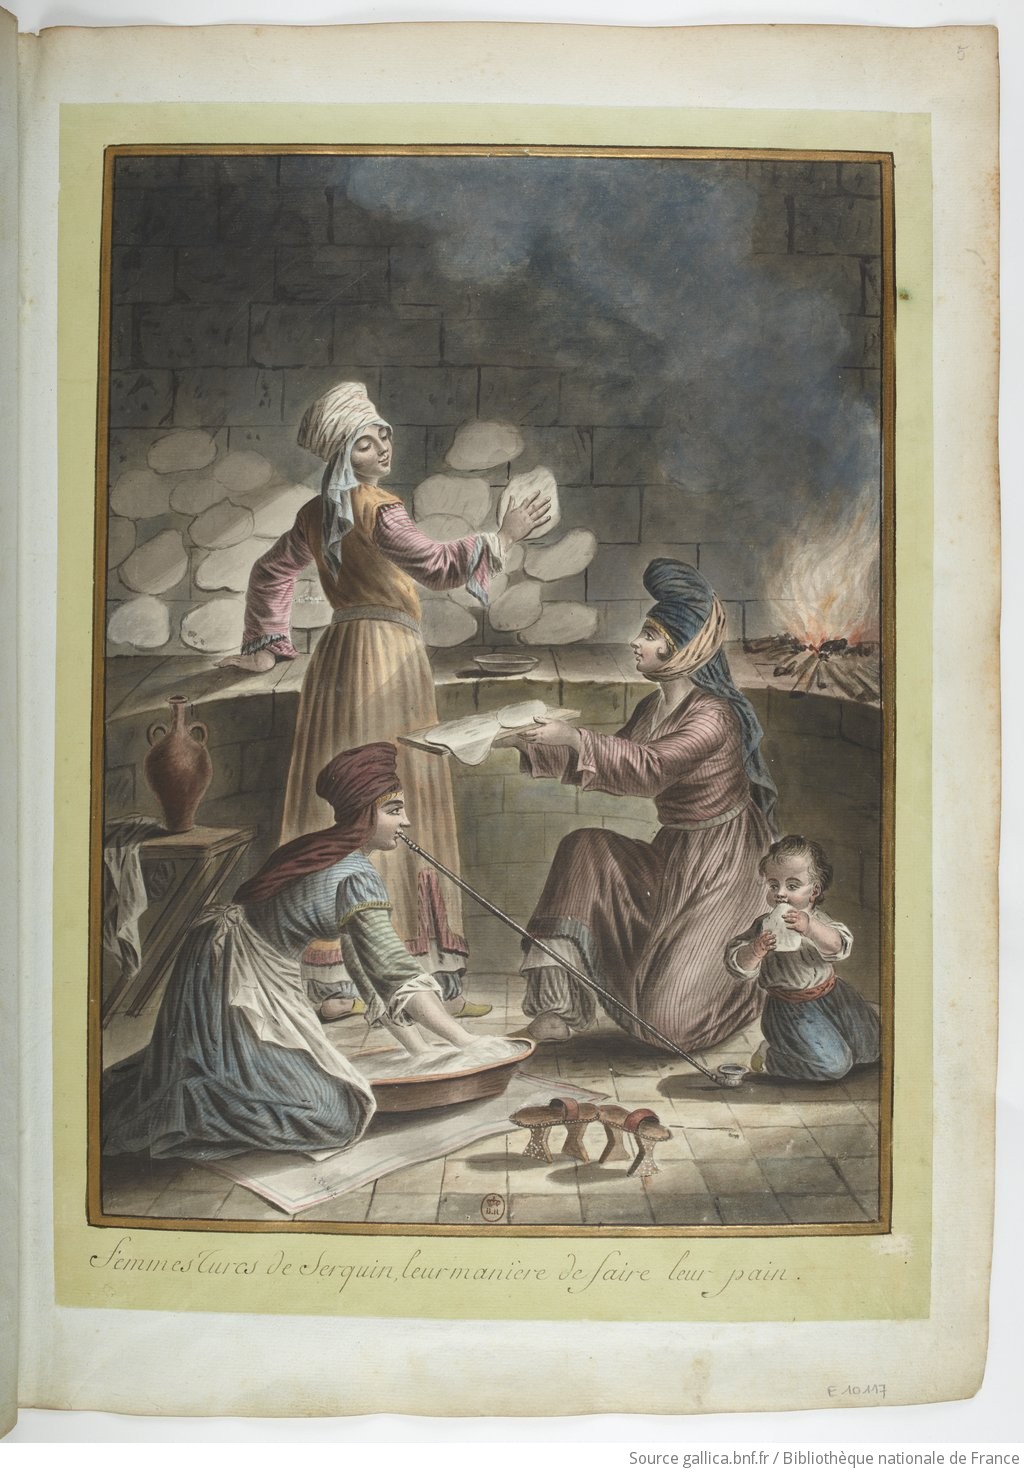 Femmes Turcs [turques] de Serquin, leur manière de faire leur pain : [dessin] / [François-Marie Rosset]